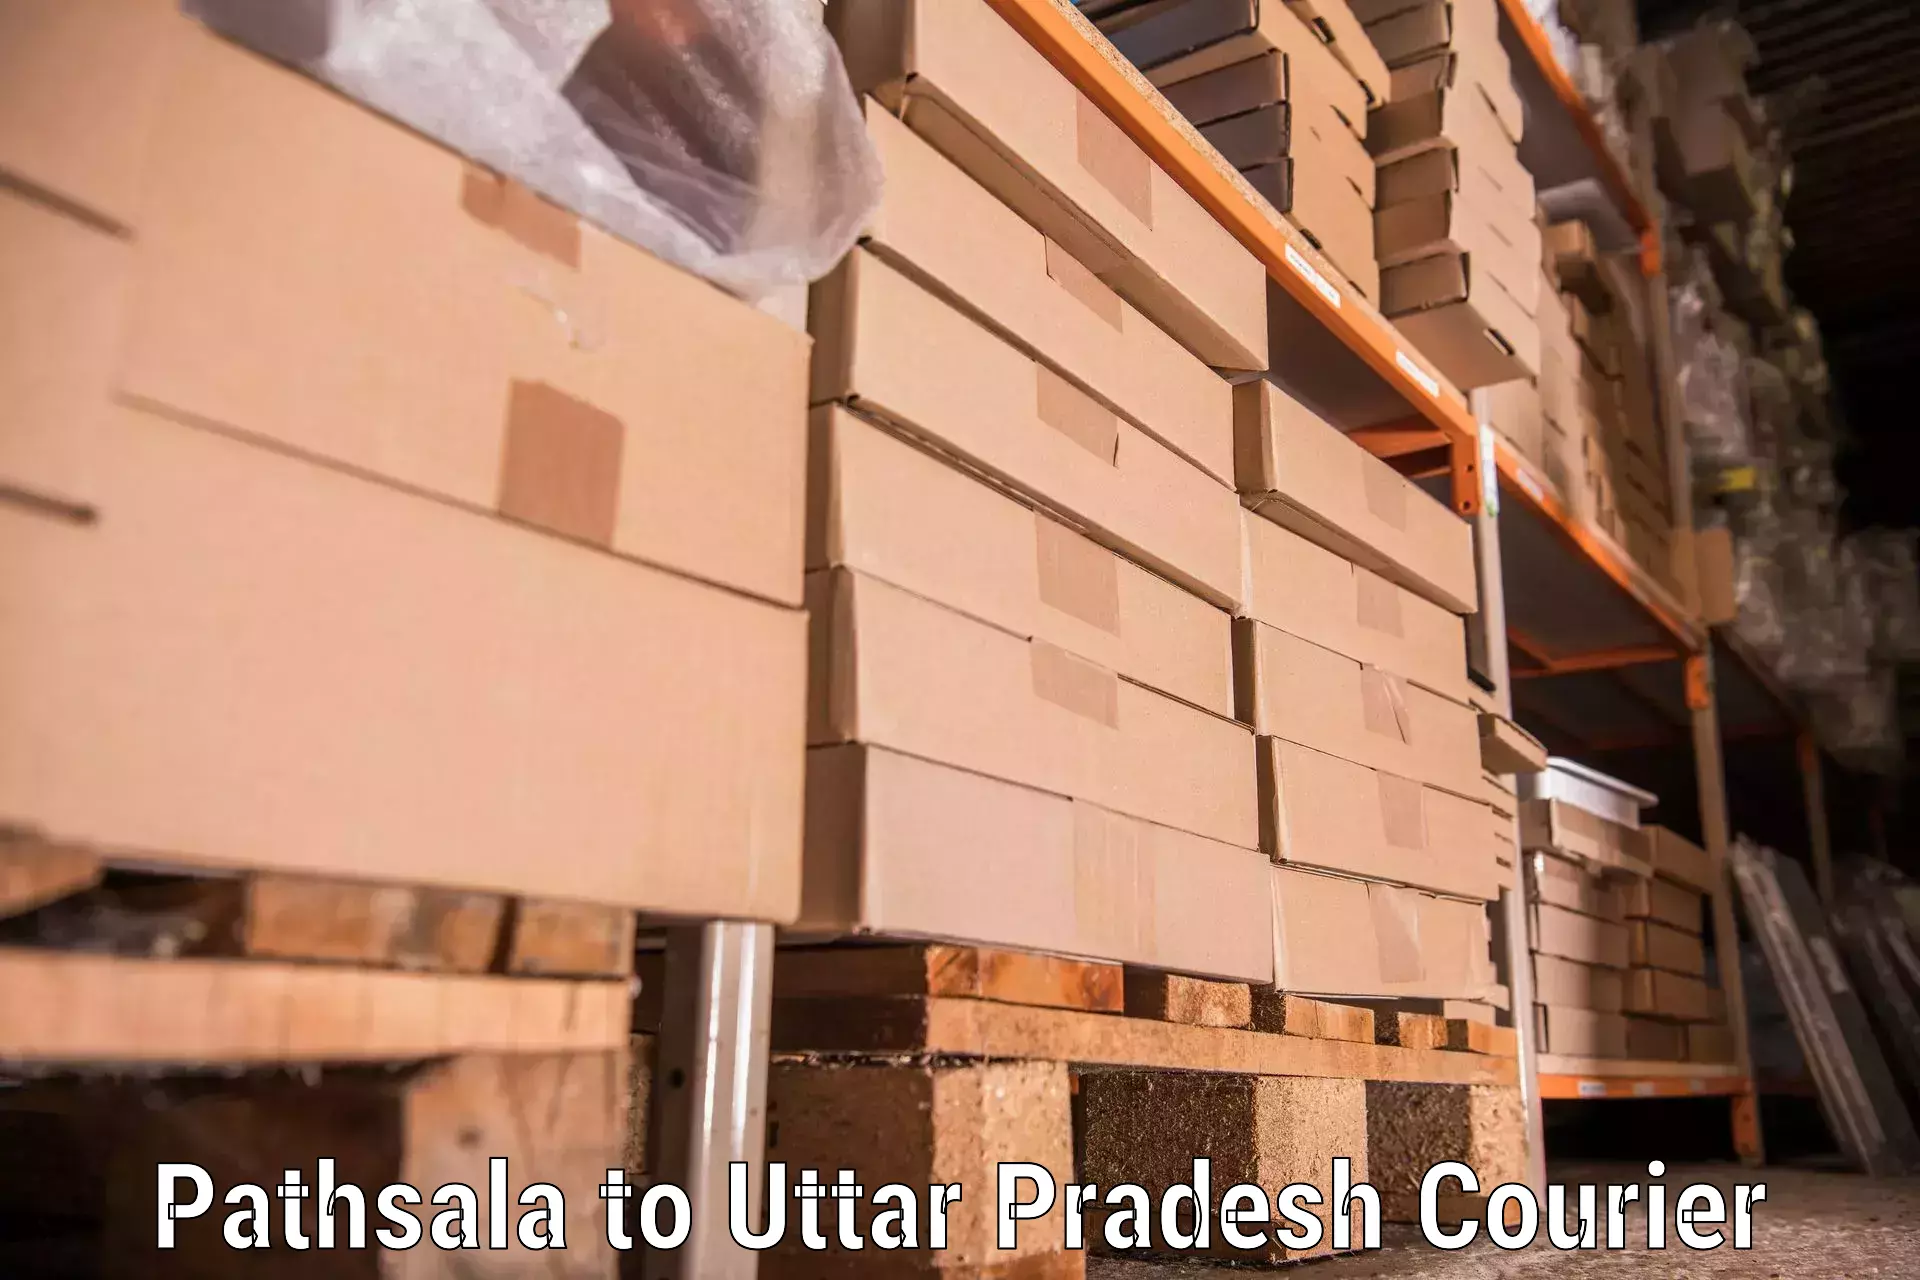 Furniture transport specialists Pathsala to Jewar